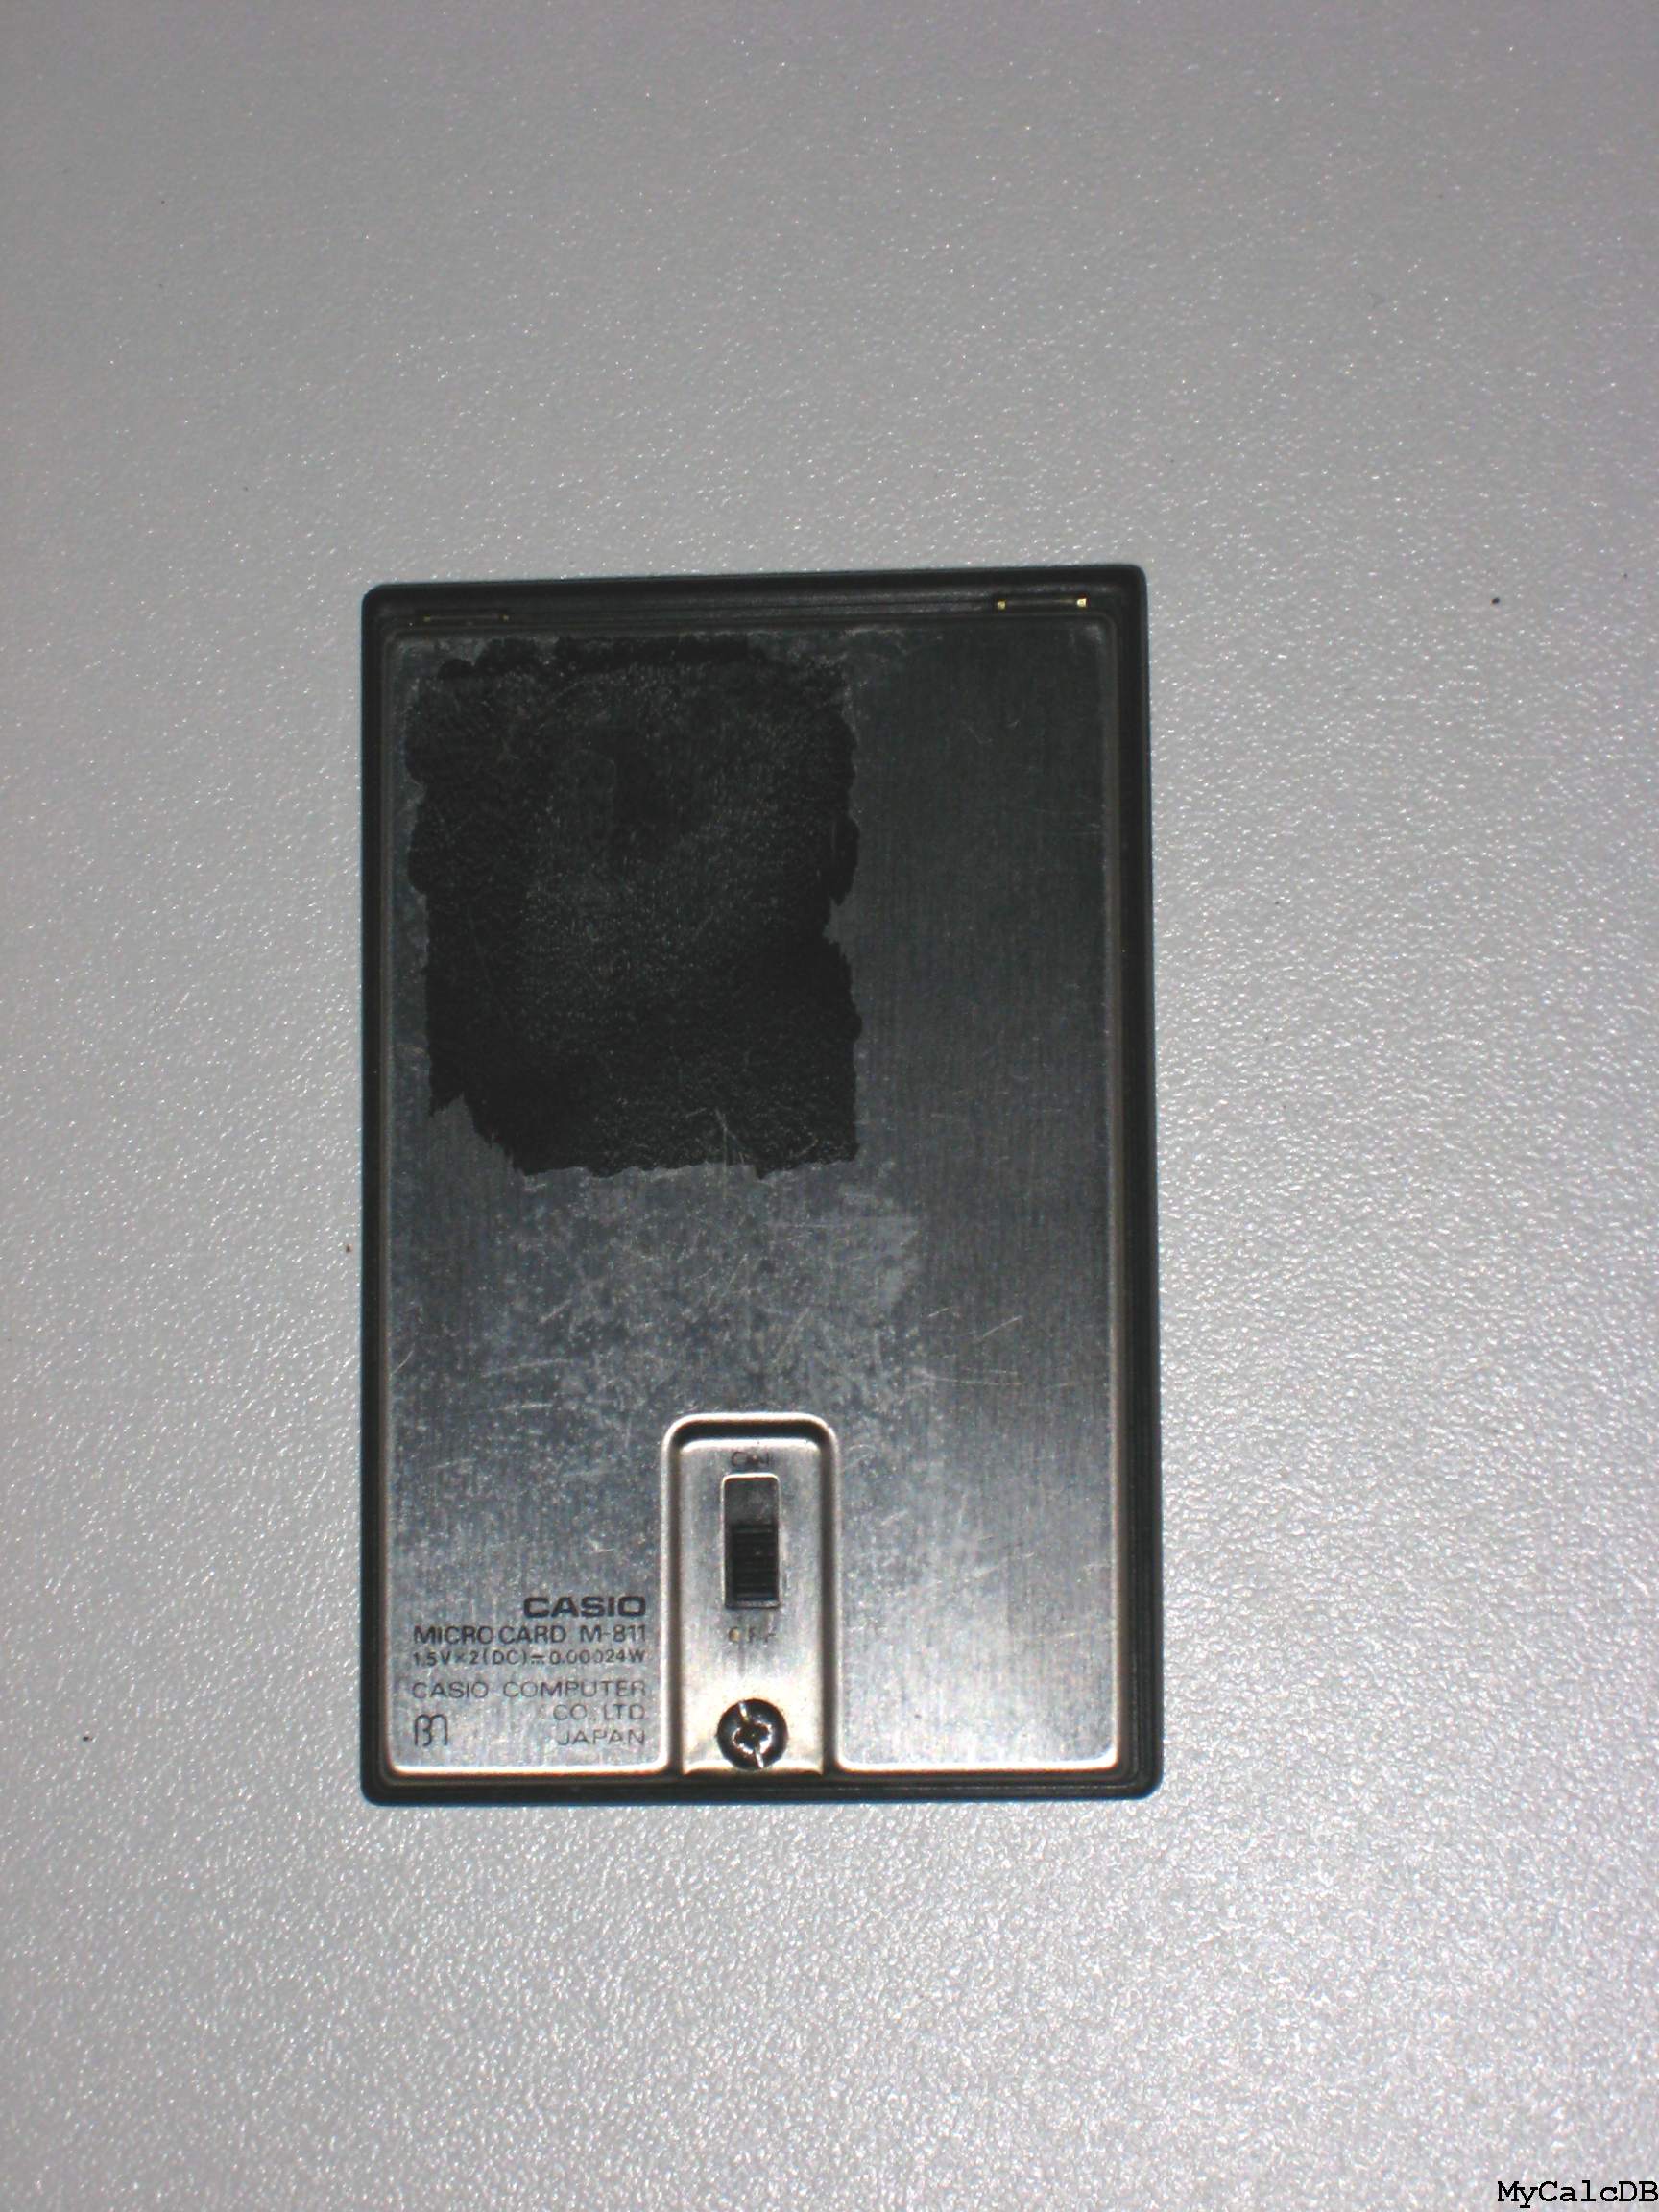 Casio MICRO CARD M-811